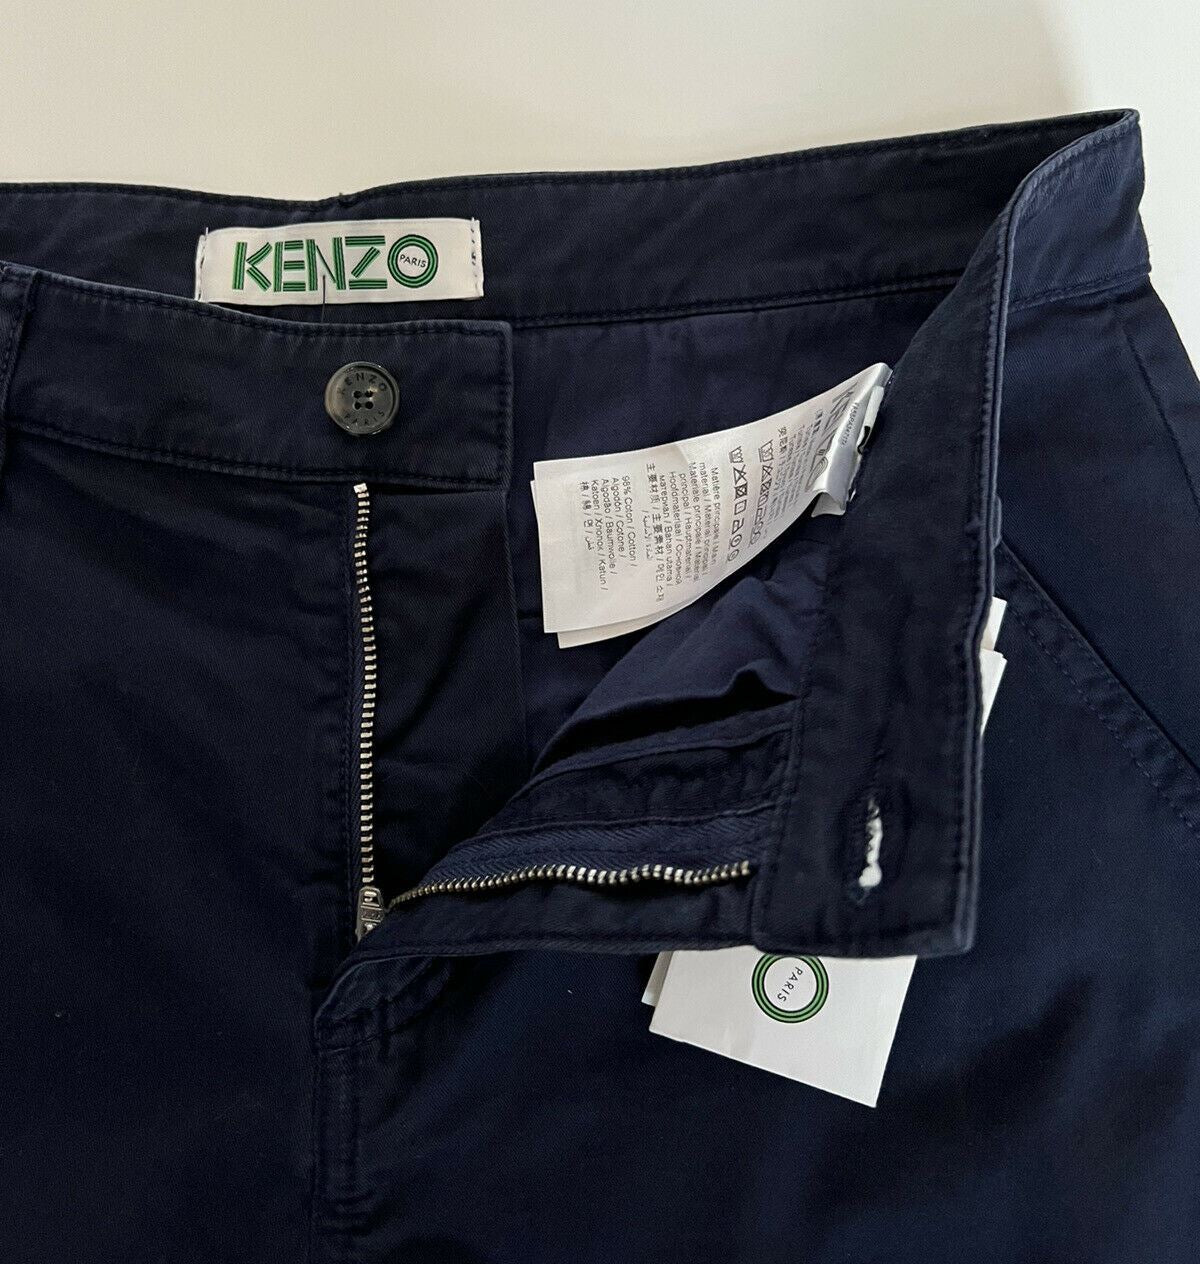 Neu mit Etikett: 280 $ Kenzo Herren-Freizeithose mit Reißverschluss in Mitternachtsblau, Größe 28 US (44 Euro)